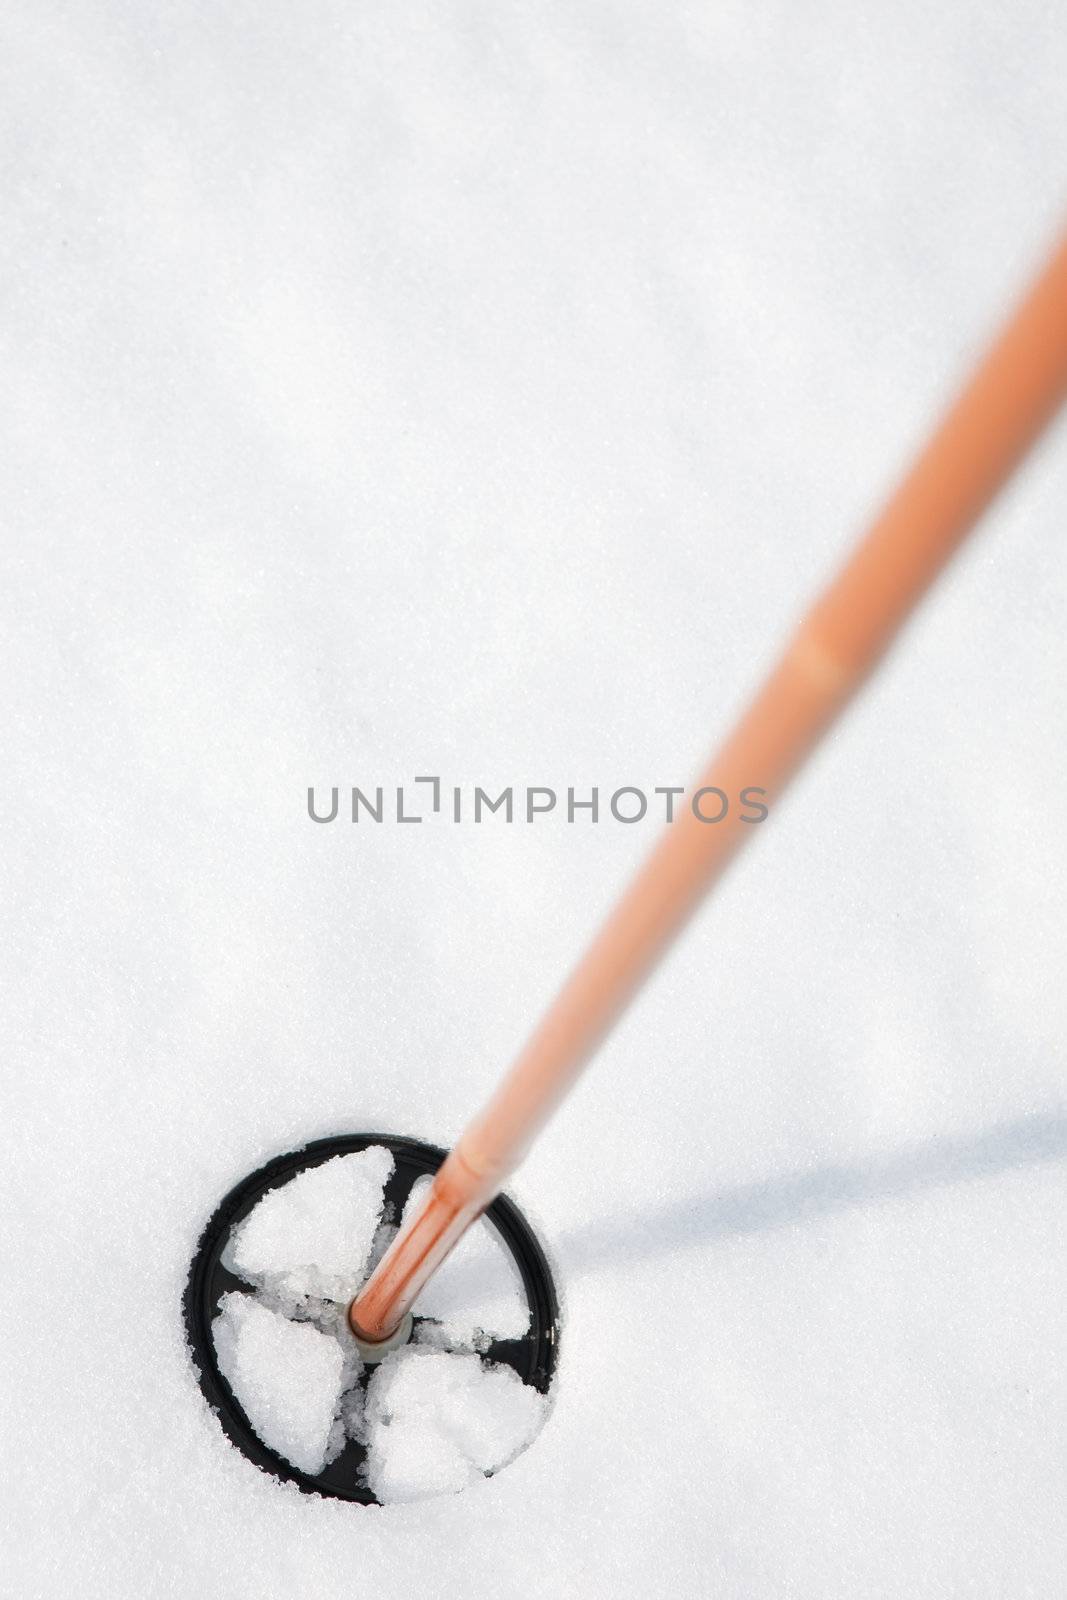 A ski pole in snow